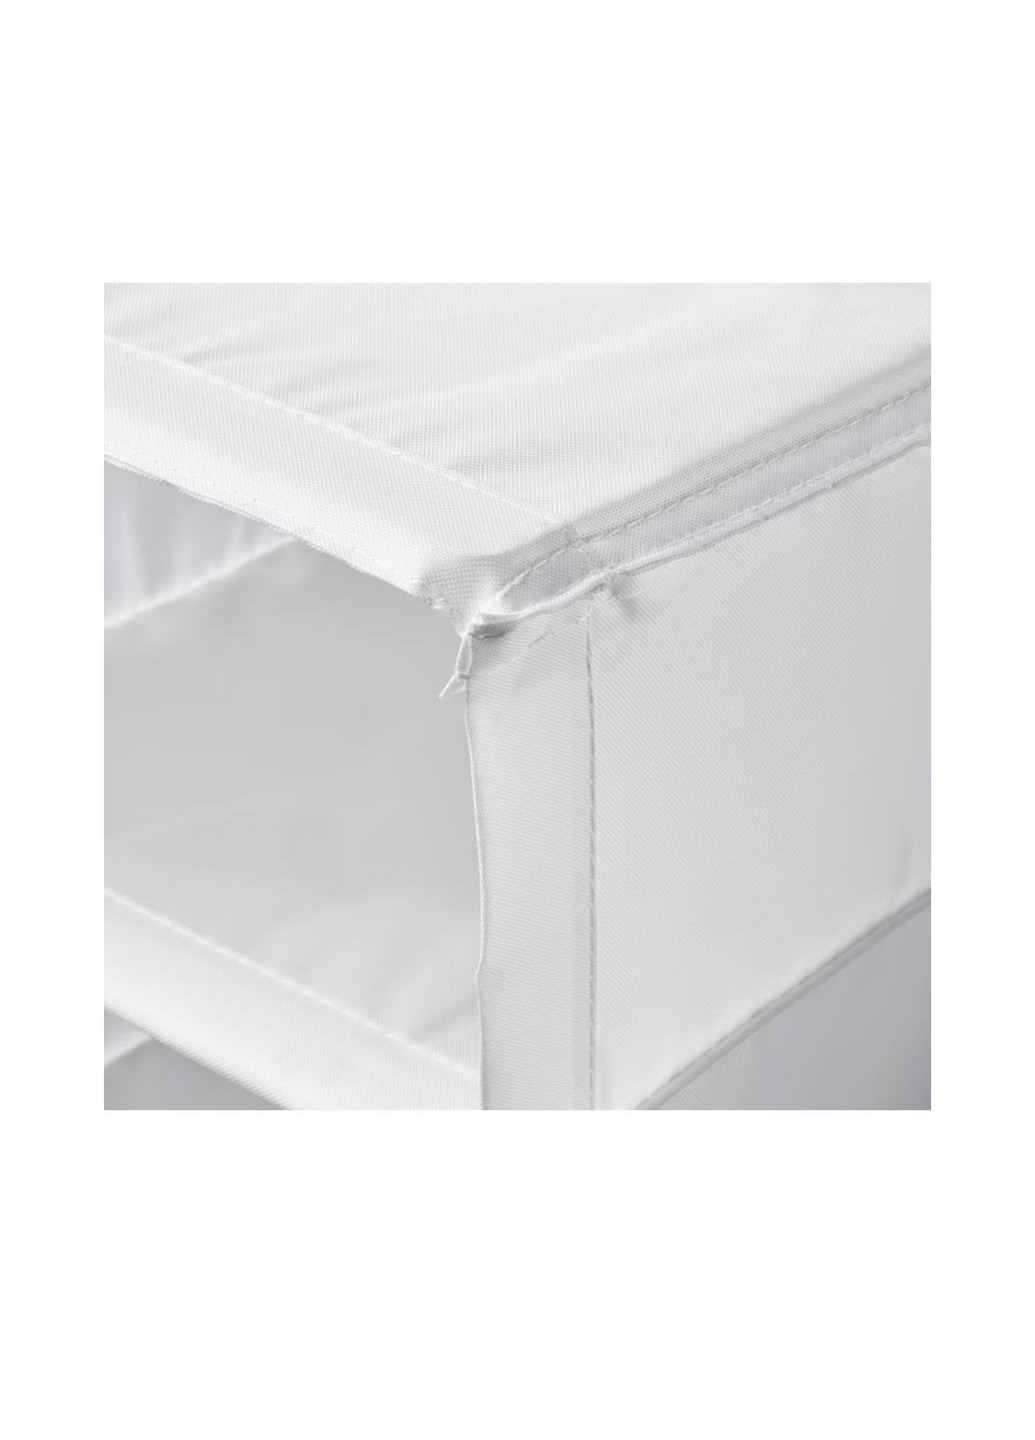 Книжный шкаф с 9 отделениями, белый, 22x34x120см IKEA skubb (259518004)